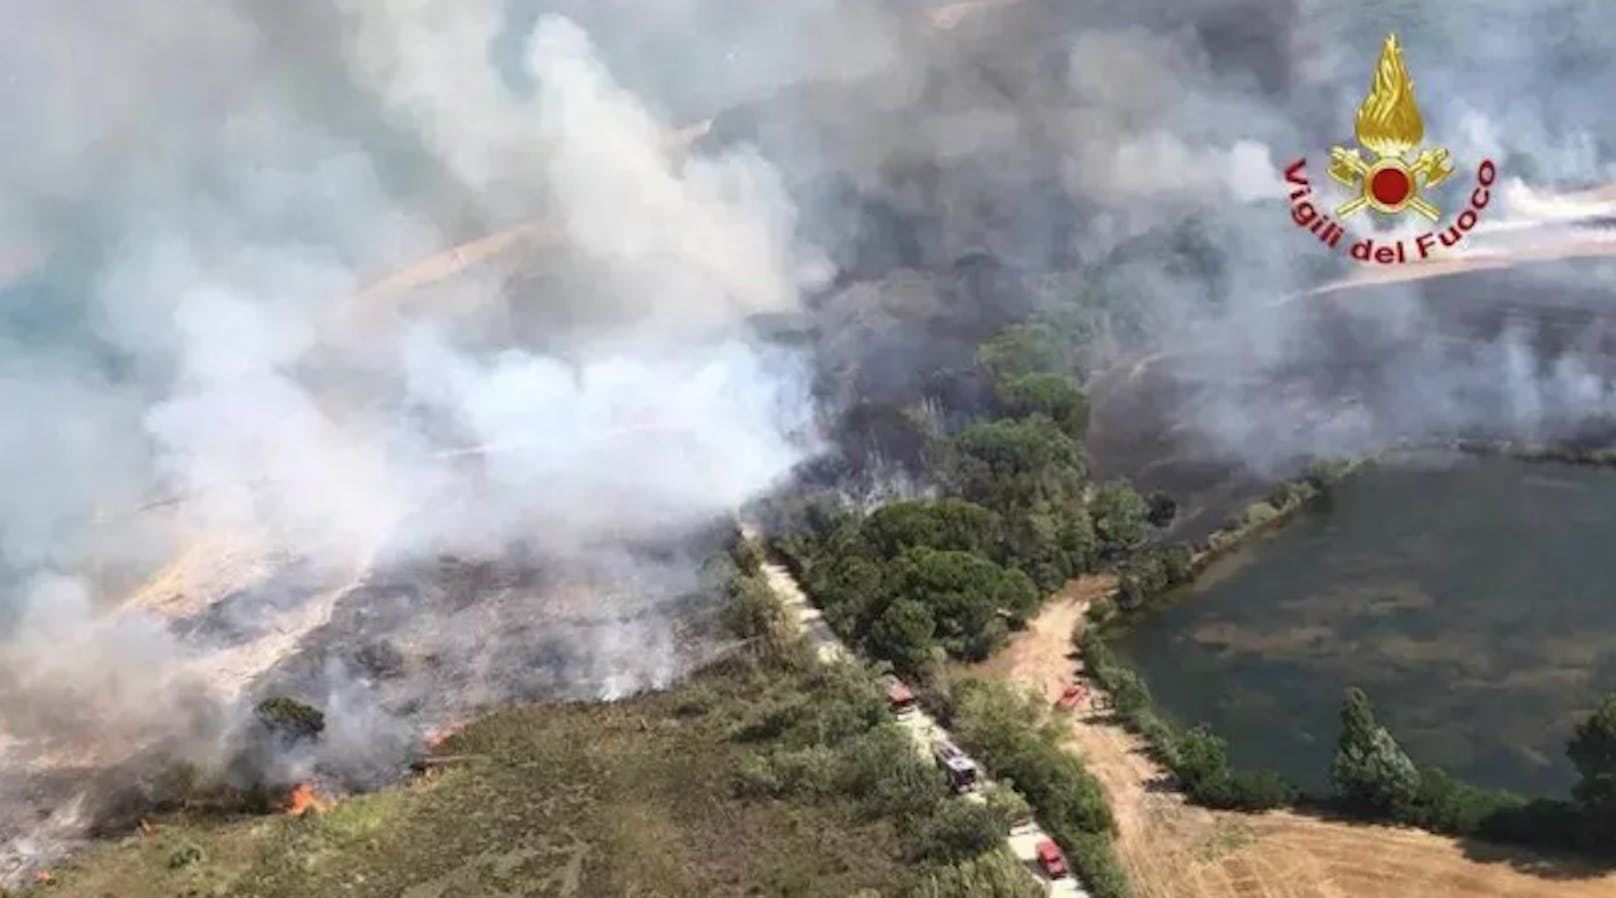 Mehr als 40 Waldbrände wurden bereits in Italien registriert. Besonders betroffen ist die Region um den beliebten Ferienort Bibione.